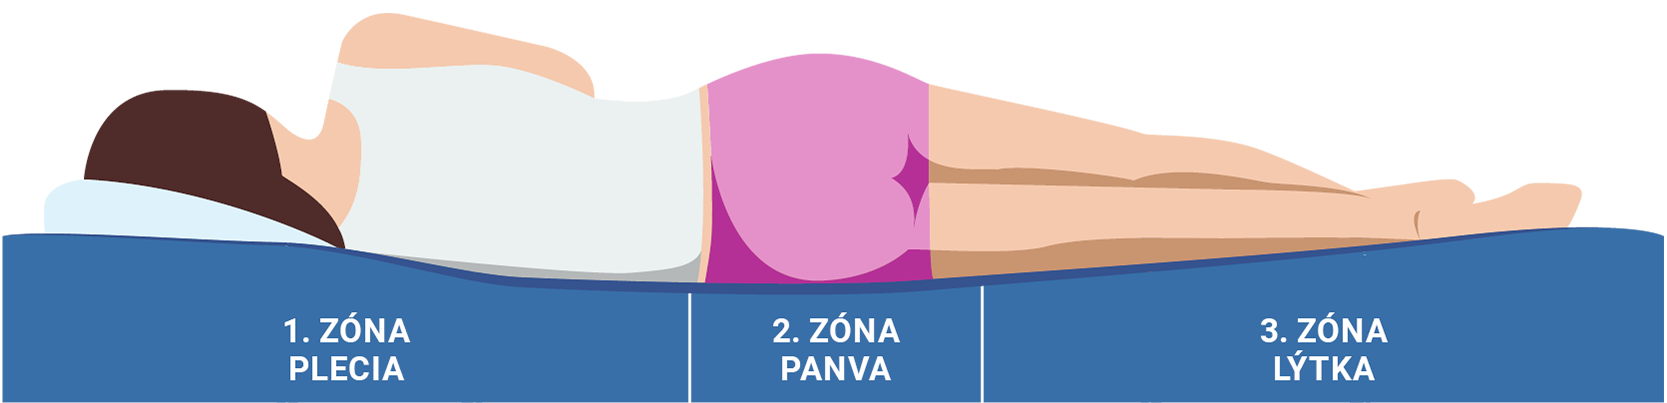 Masážní a ortopedické zóny matrace